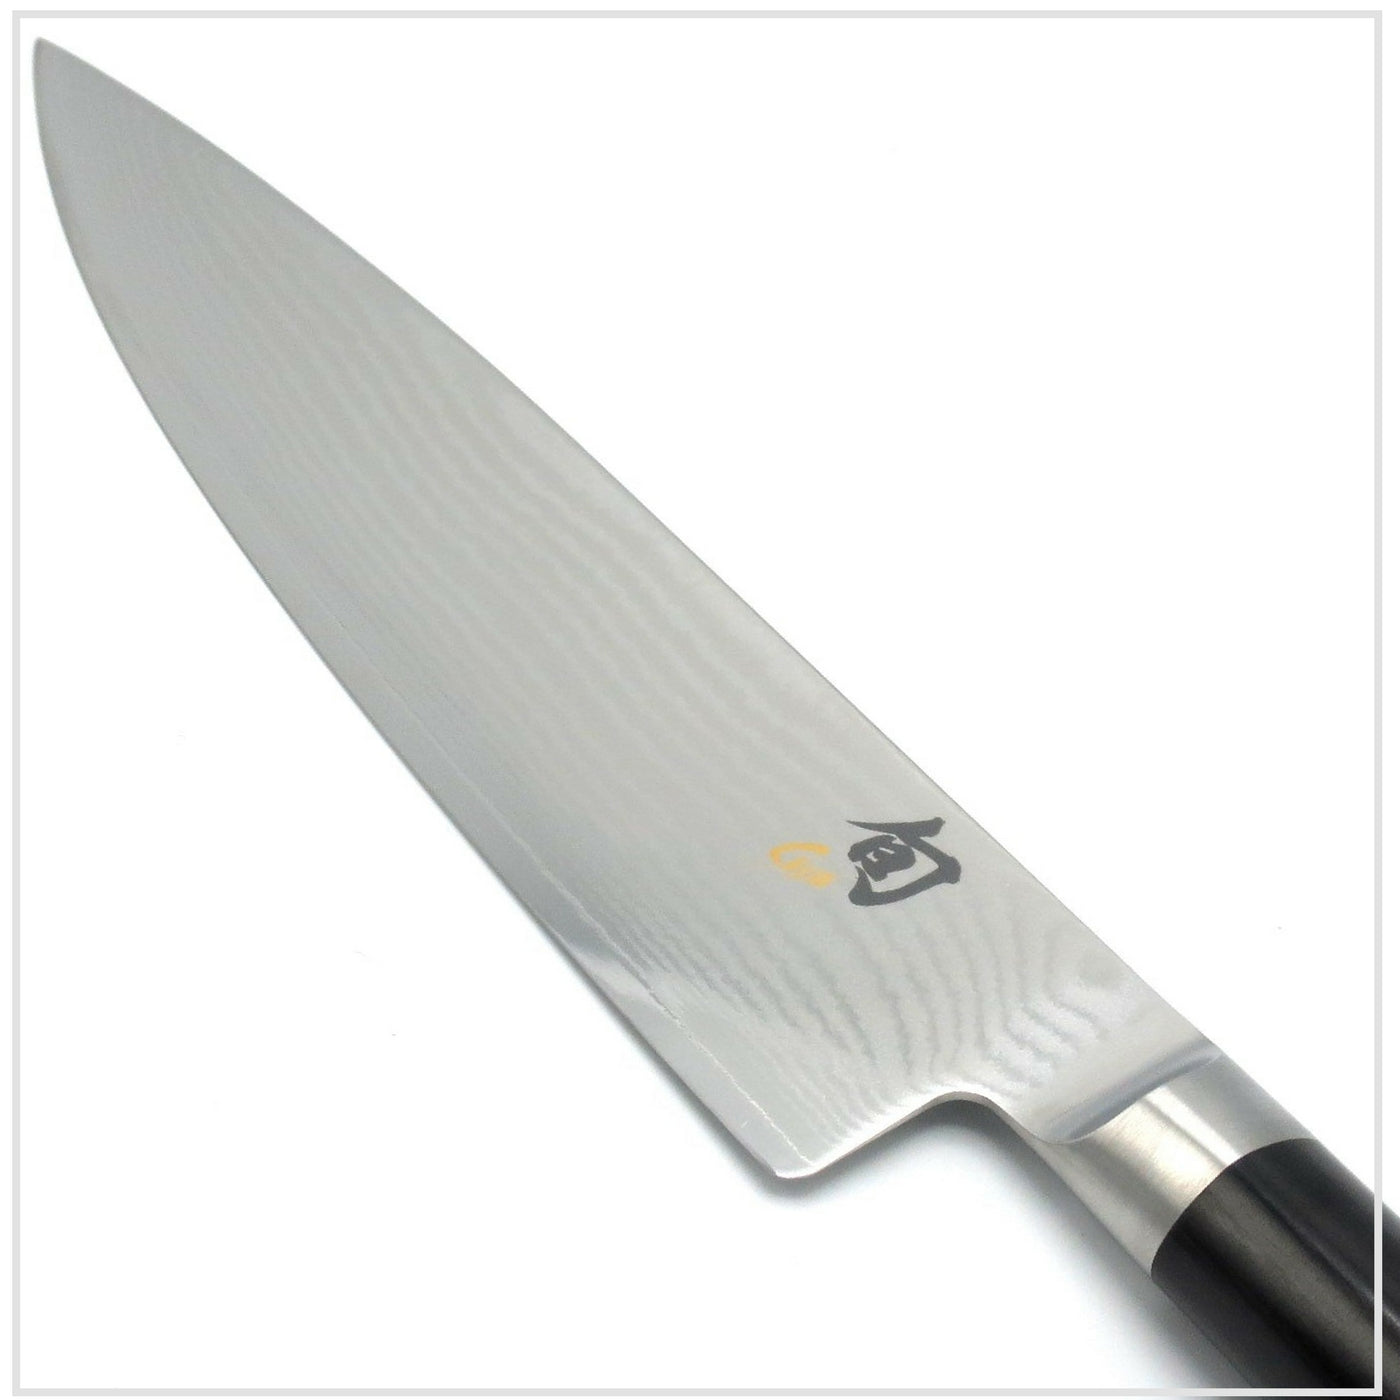 KAI SHUN Left Handed Chef's Knife 20cm